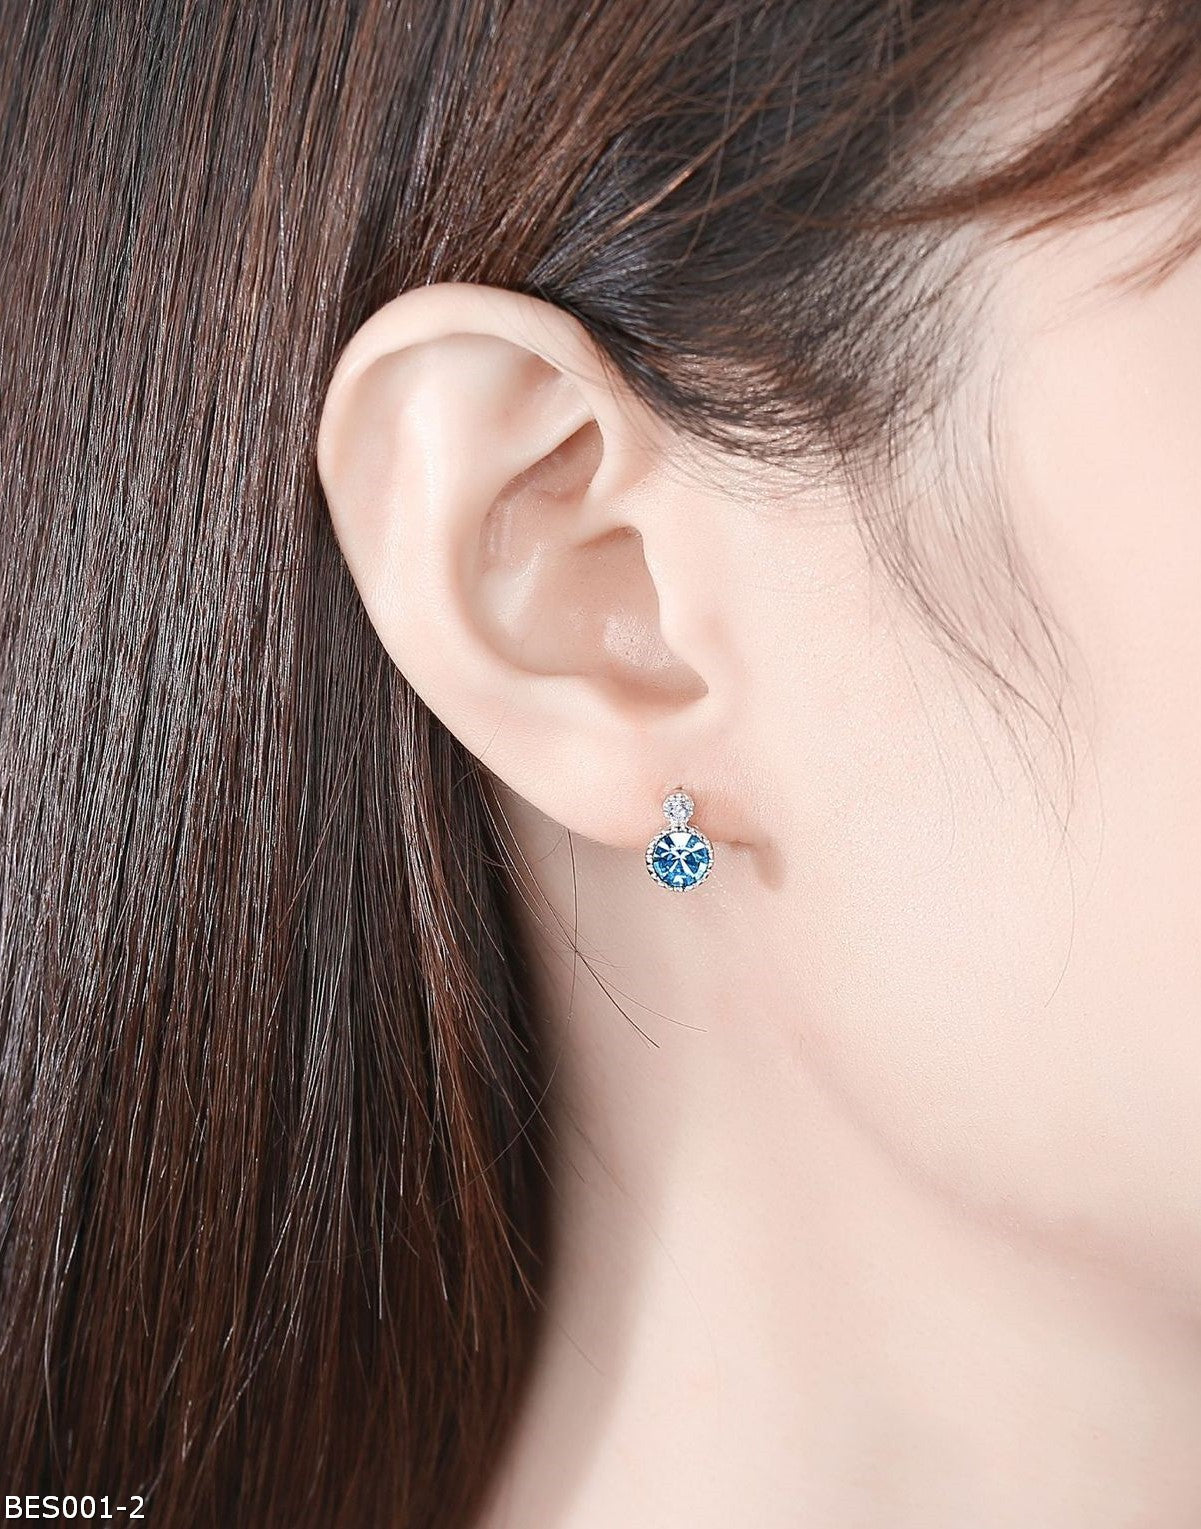 Crystal ocean heart earrings